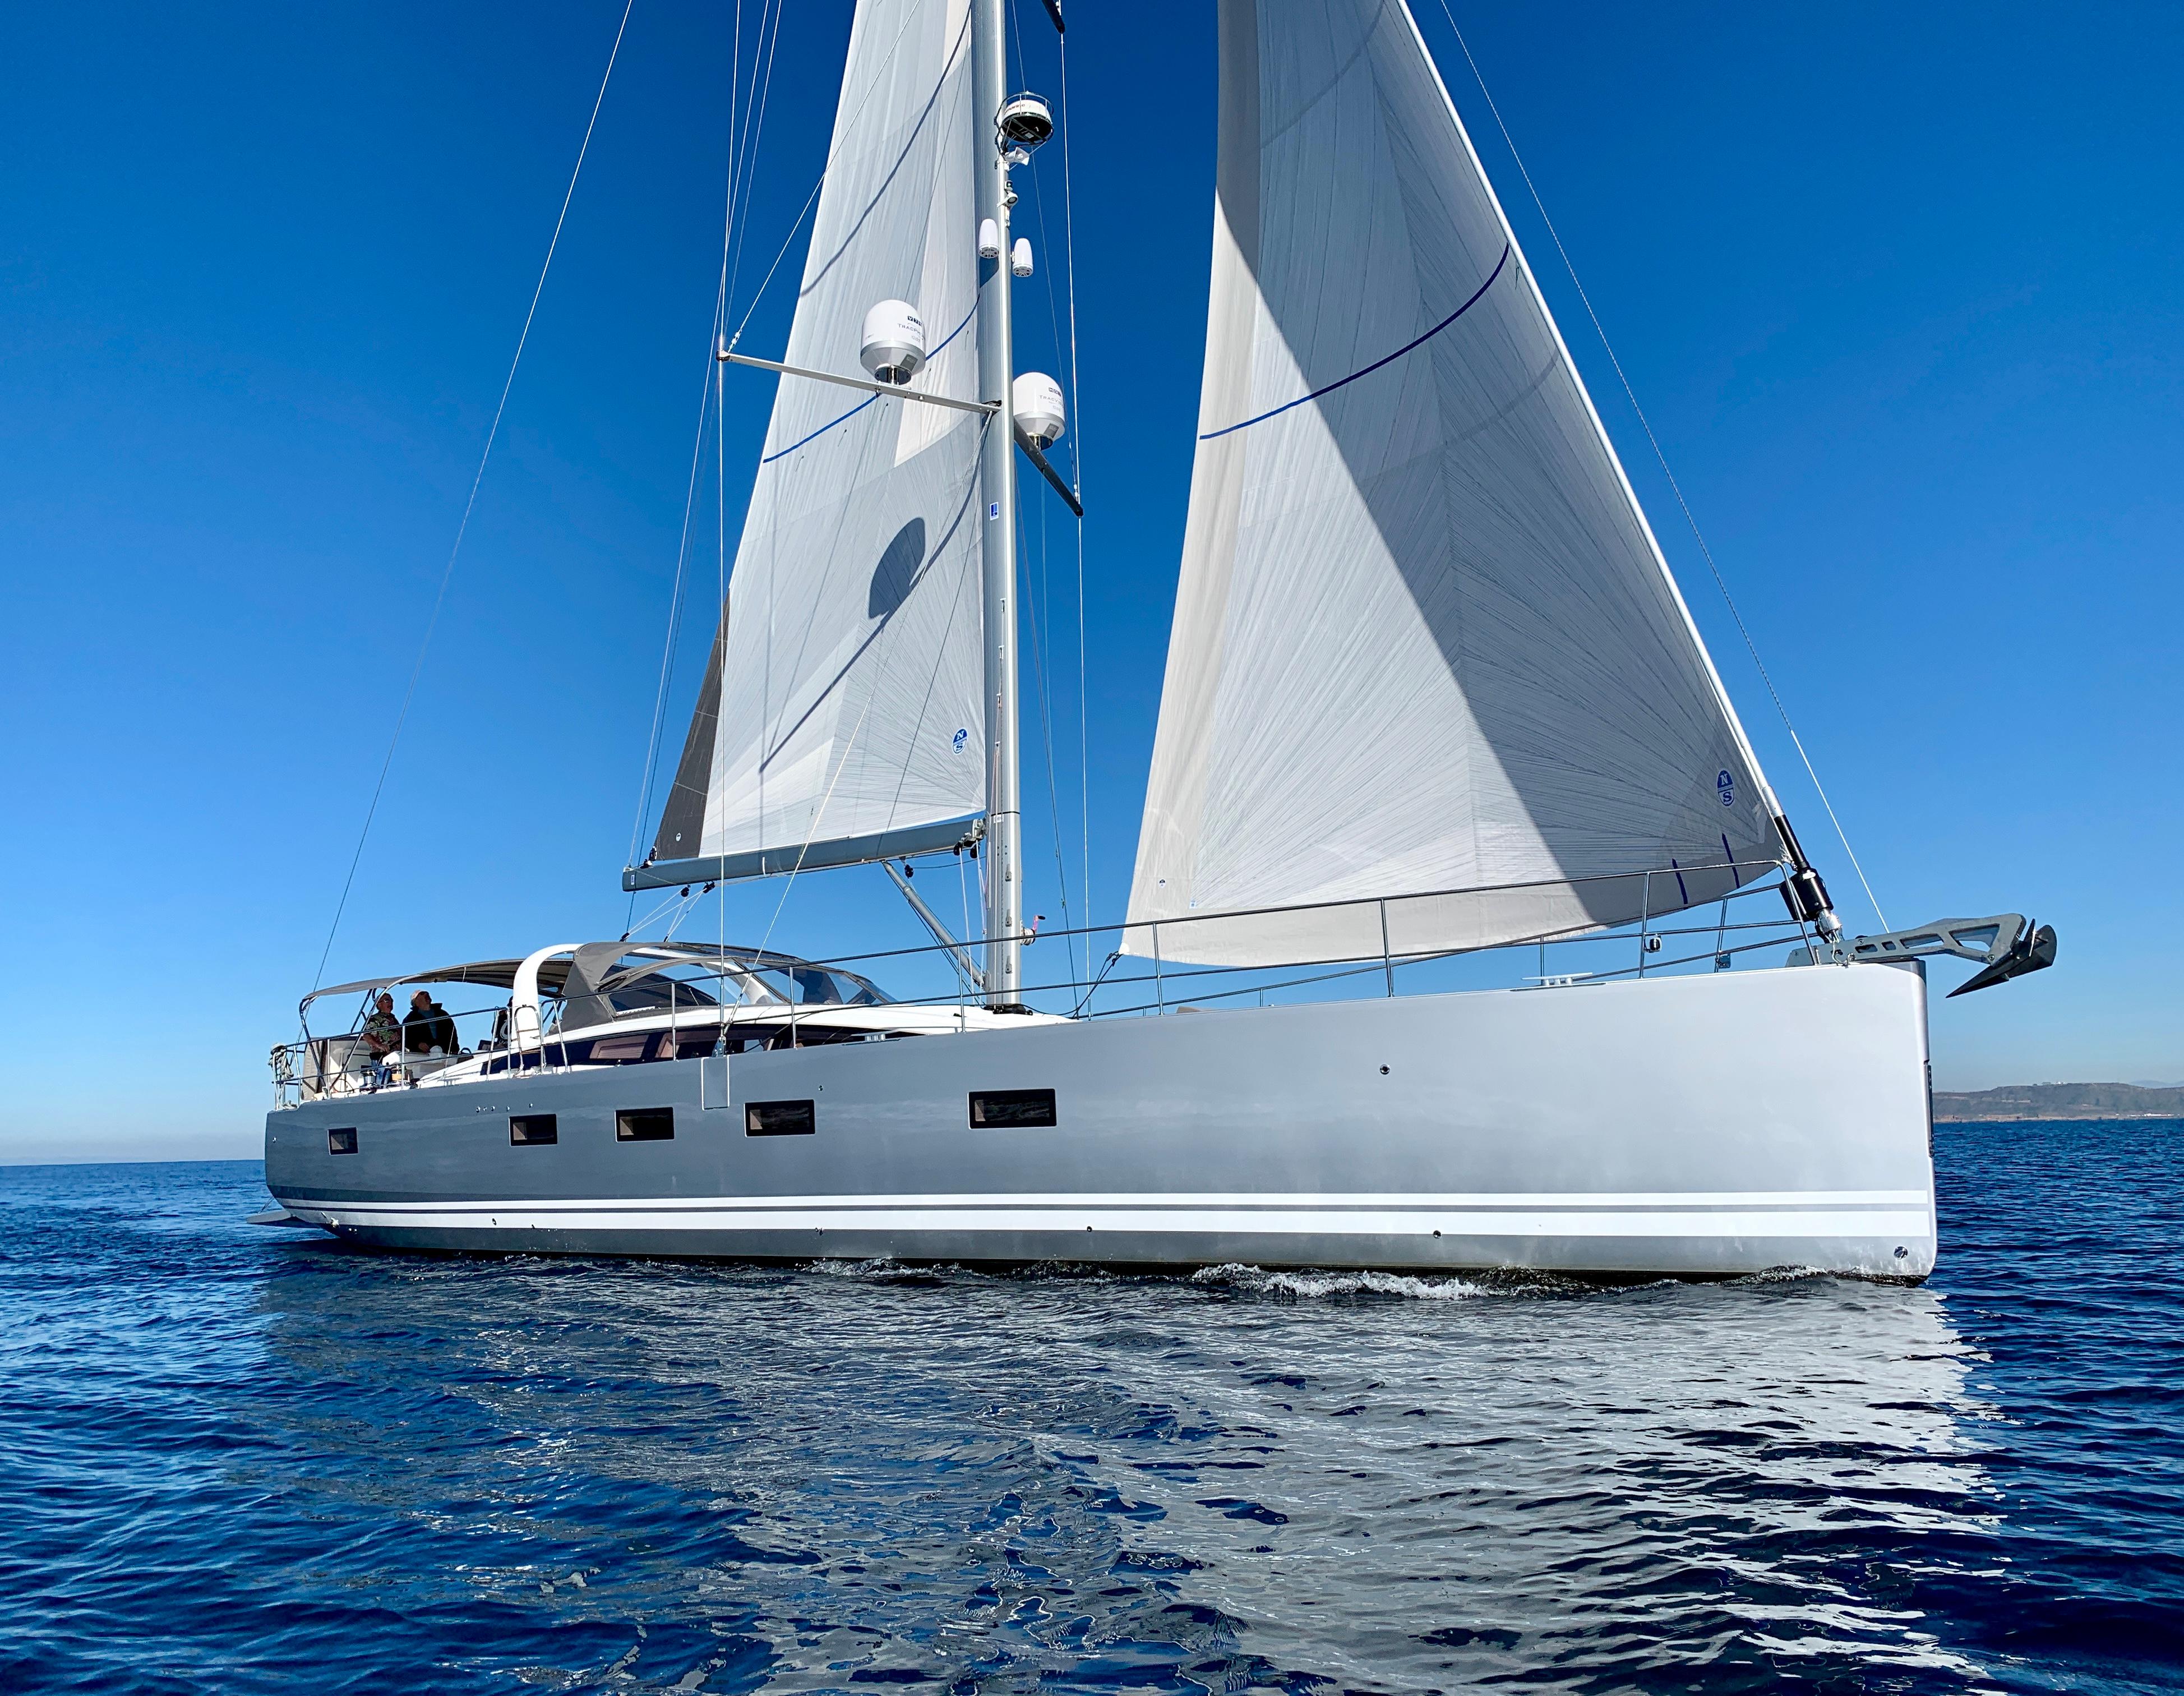 64′ Jeanneau 2019 Yacht for Sale